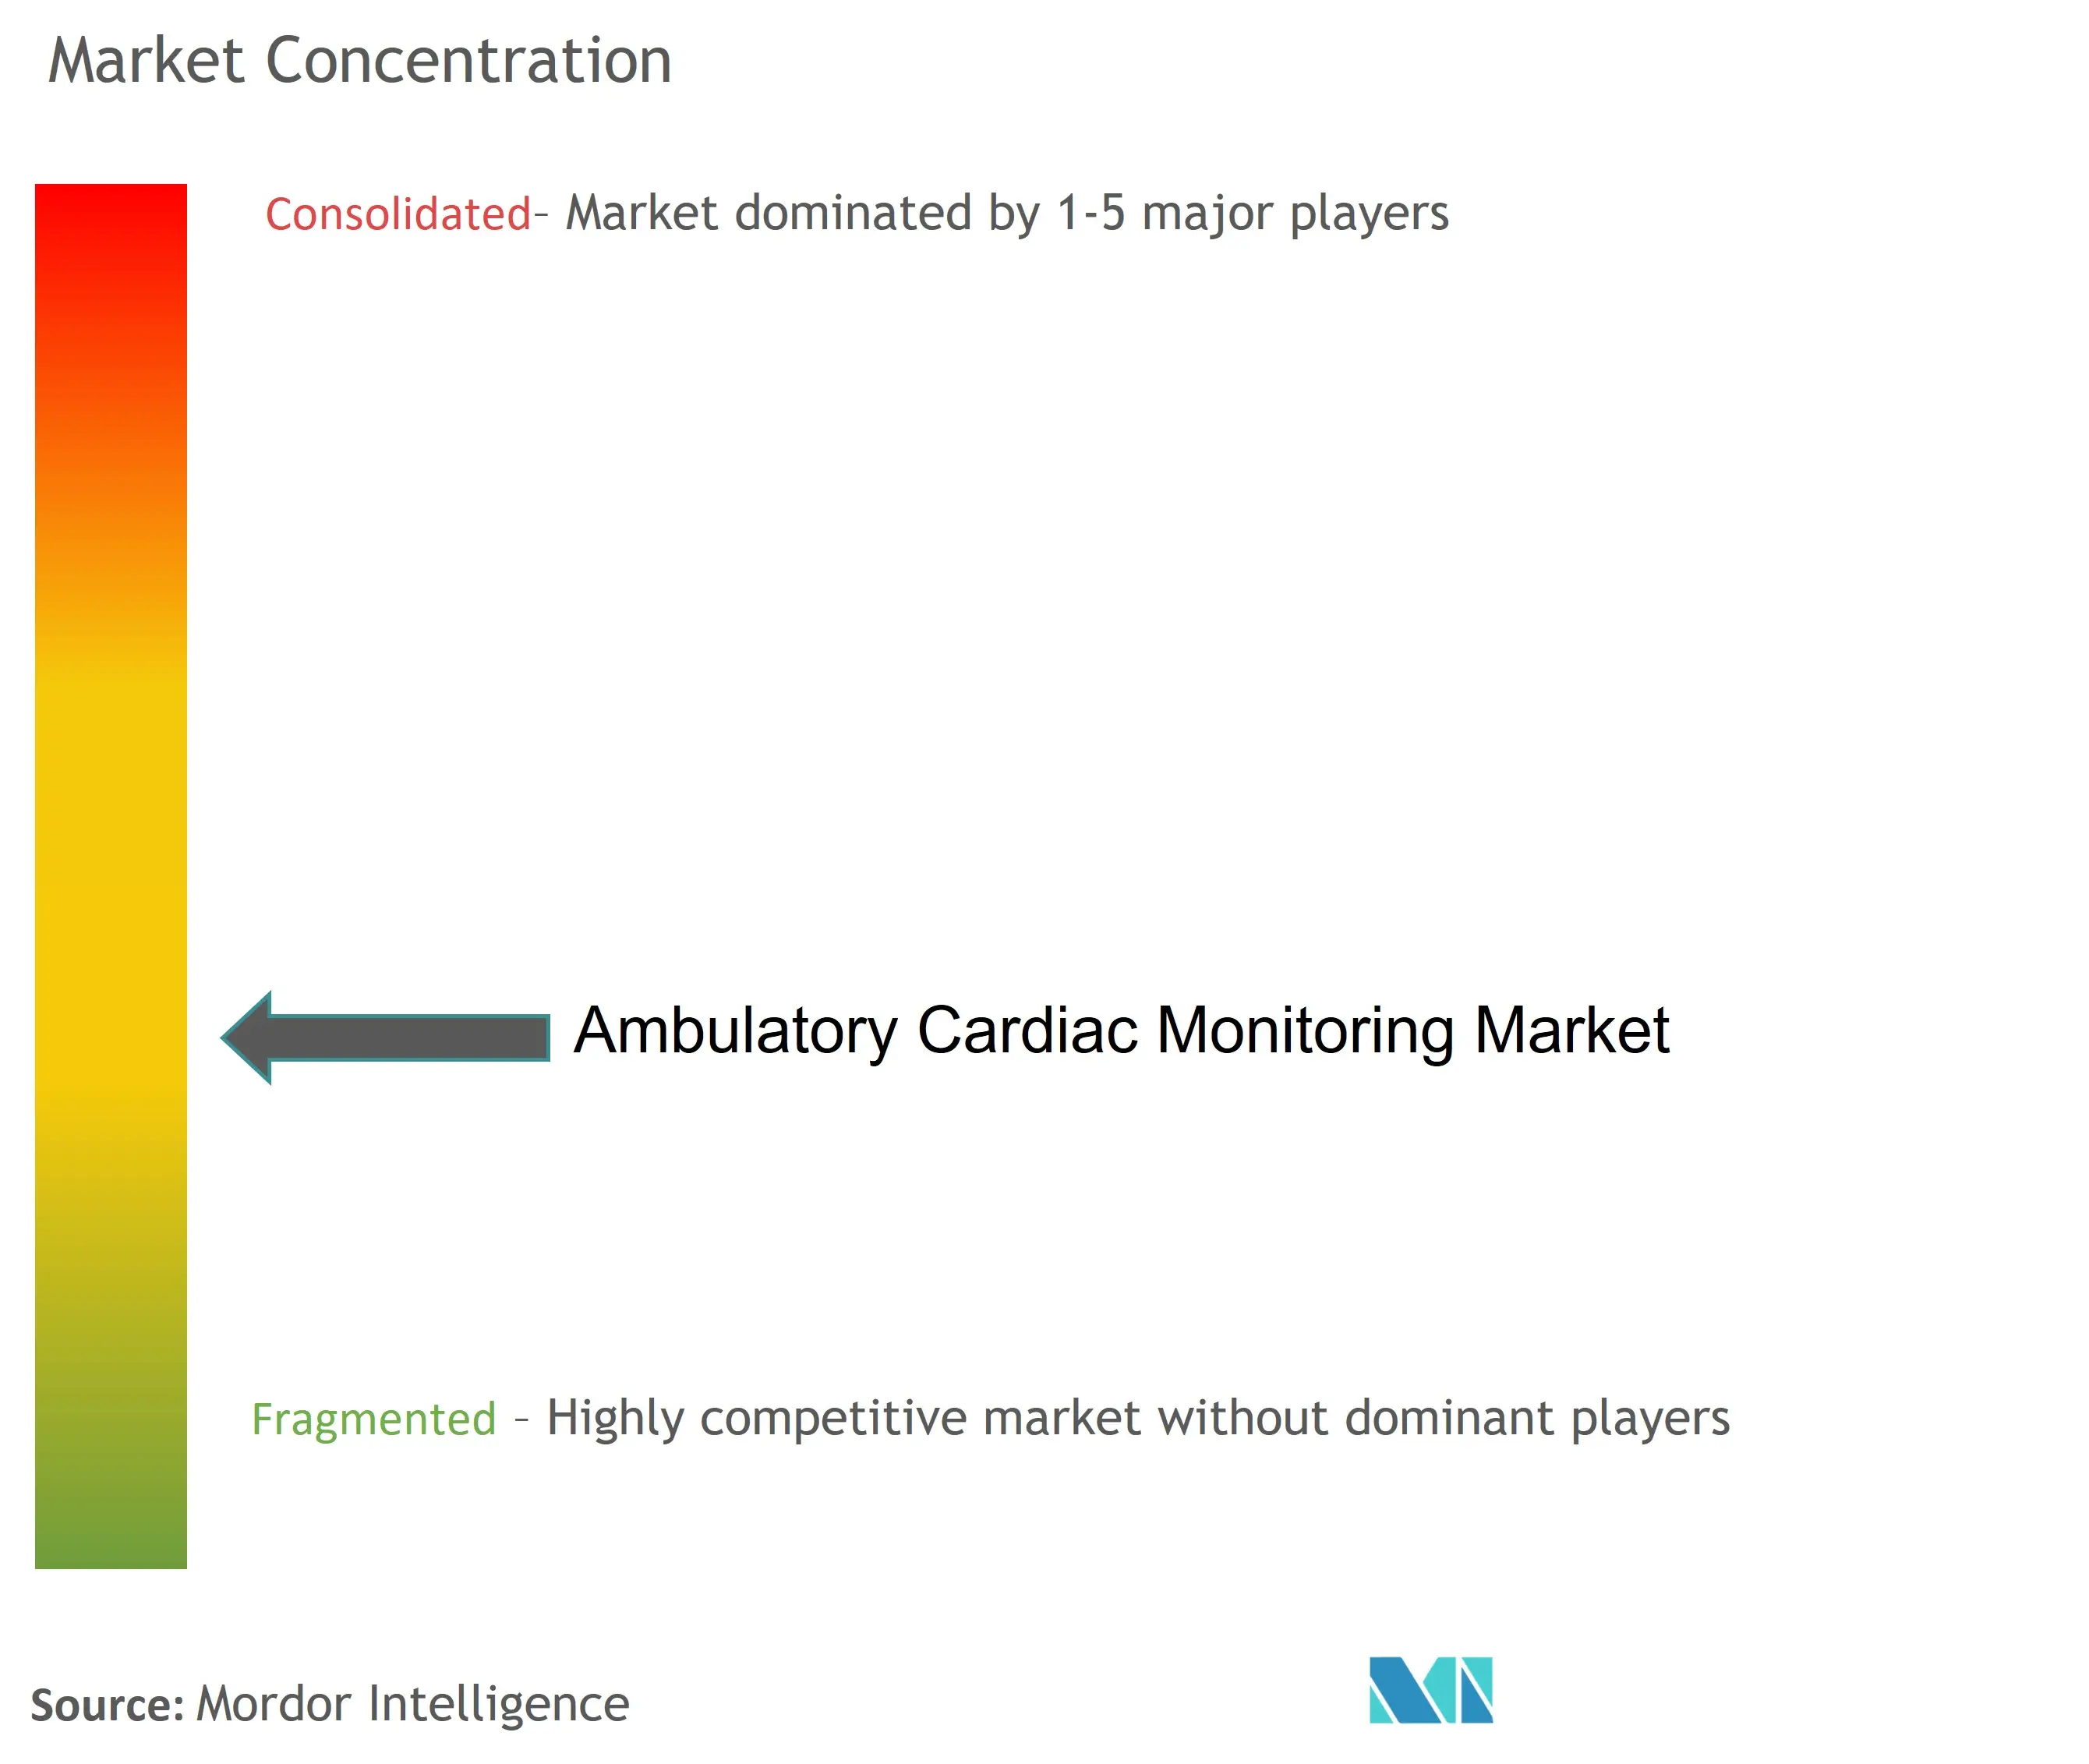 Monitorización cardíaca ambulatoriaConcentración del Mercado